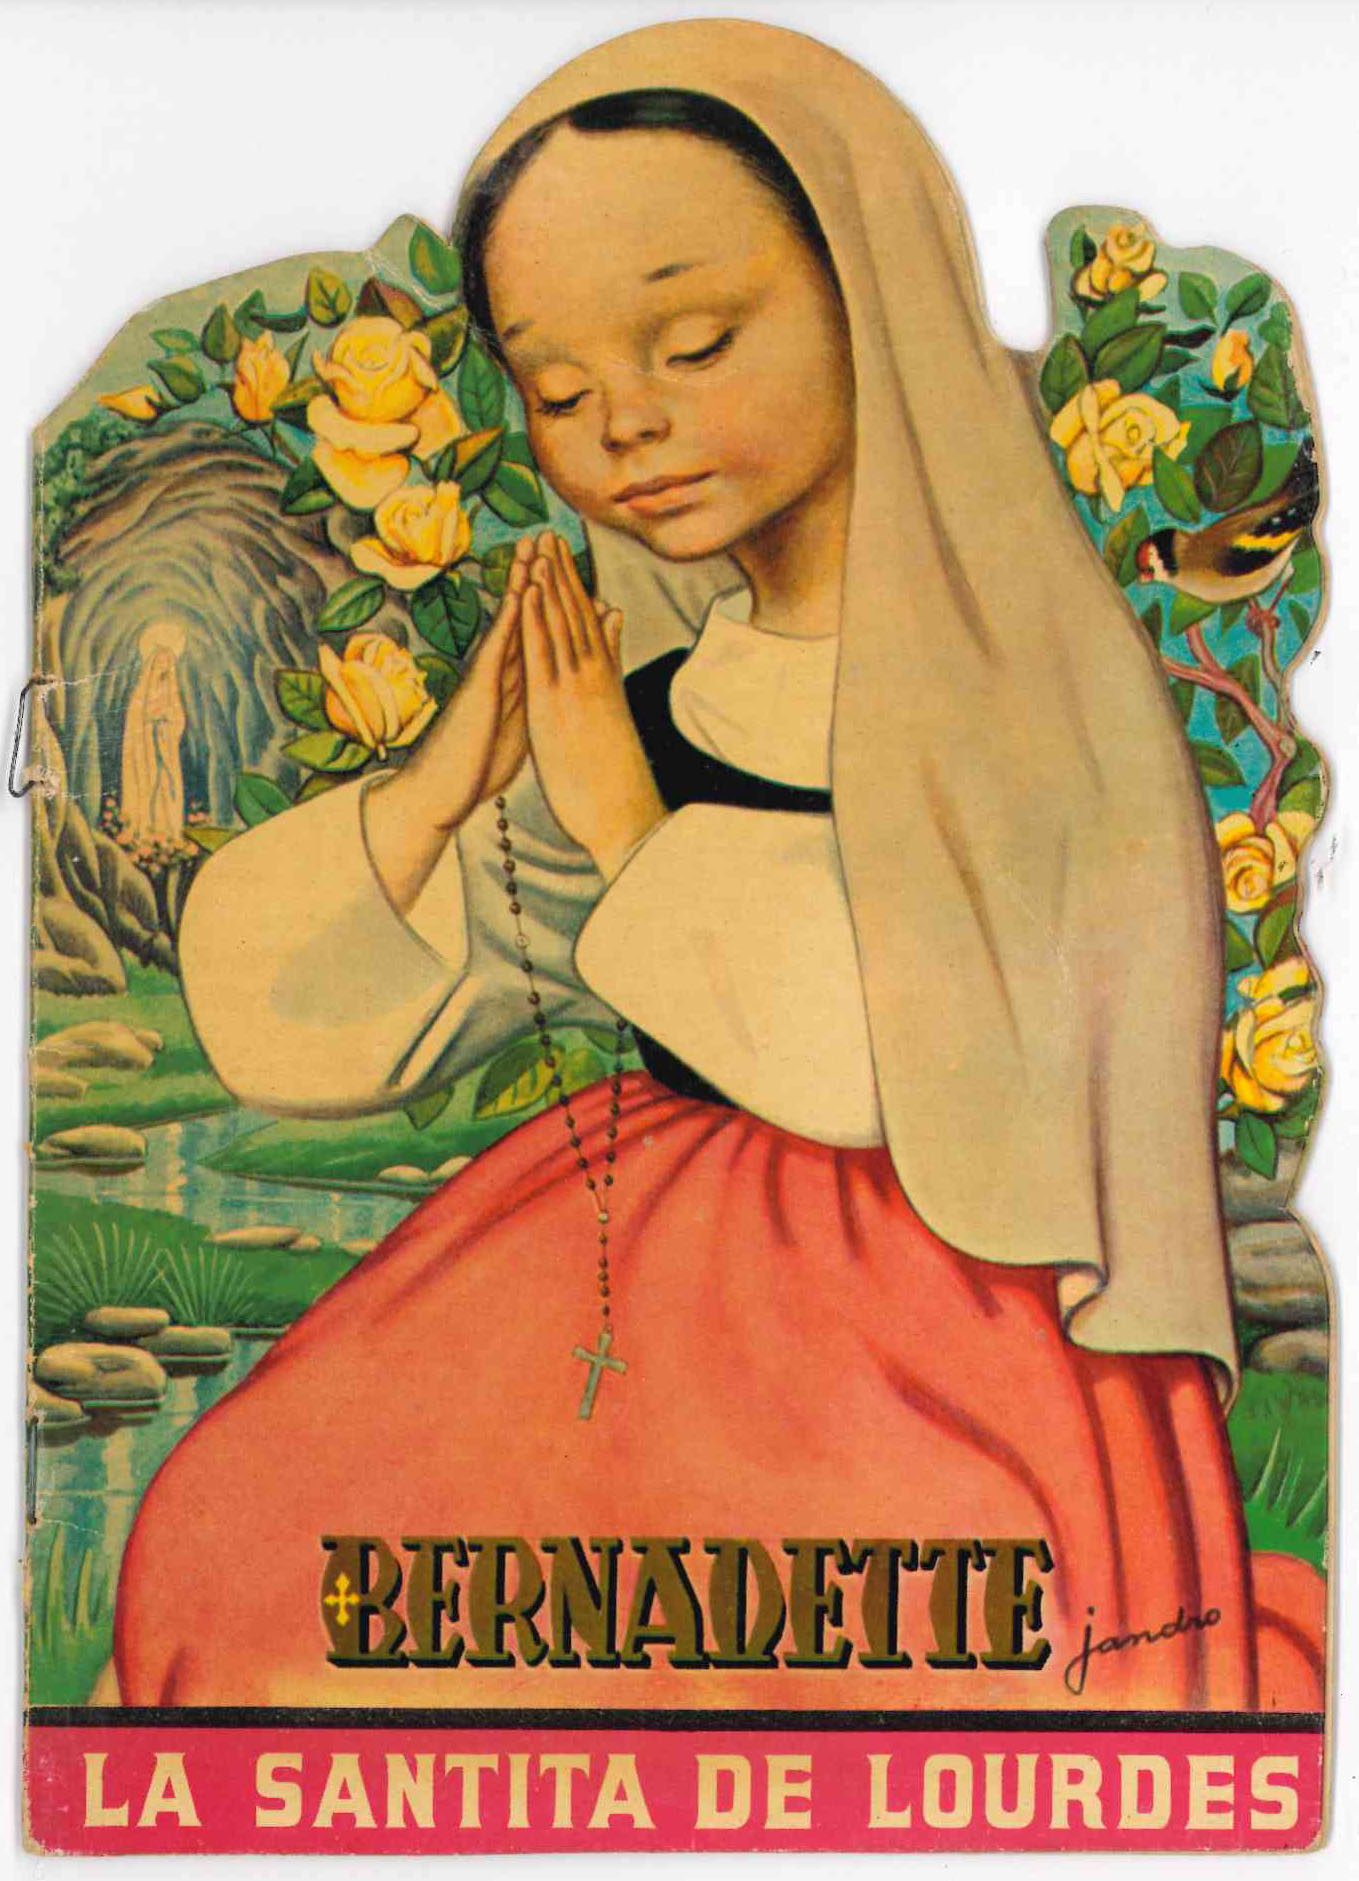 Cuento Troquelado Bernadette. Editorial artigas. Edición dedicada al Centenario 1858-1958